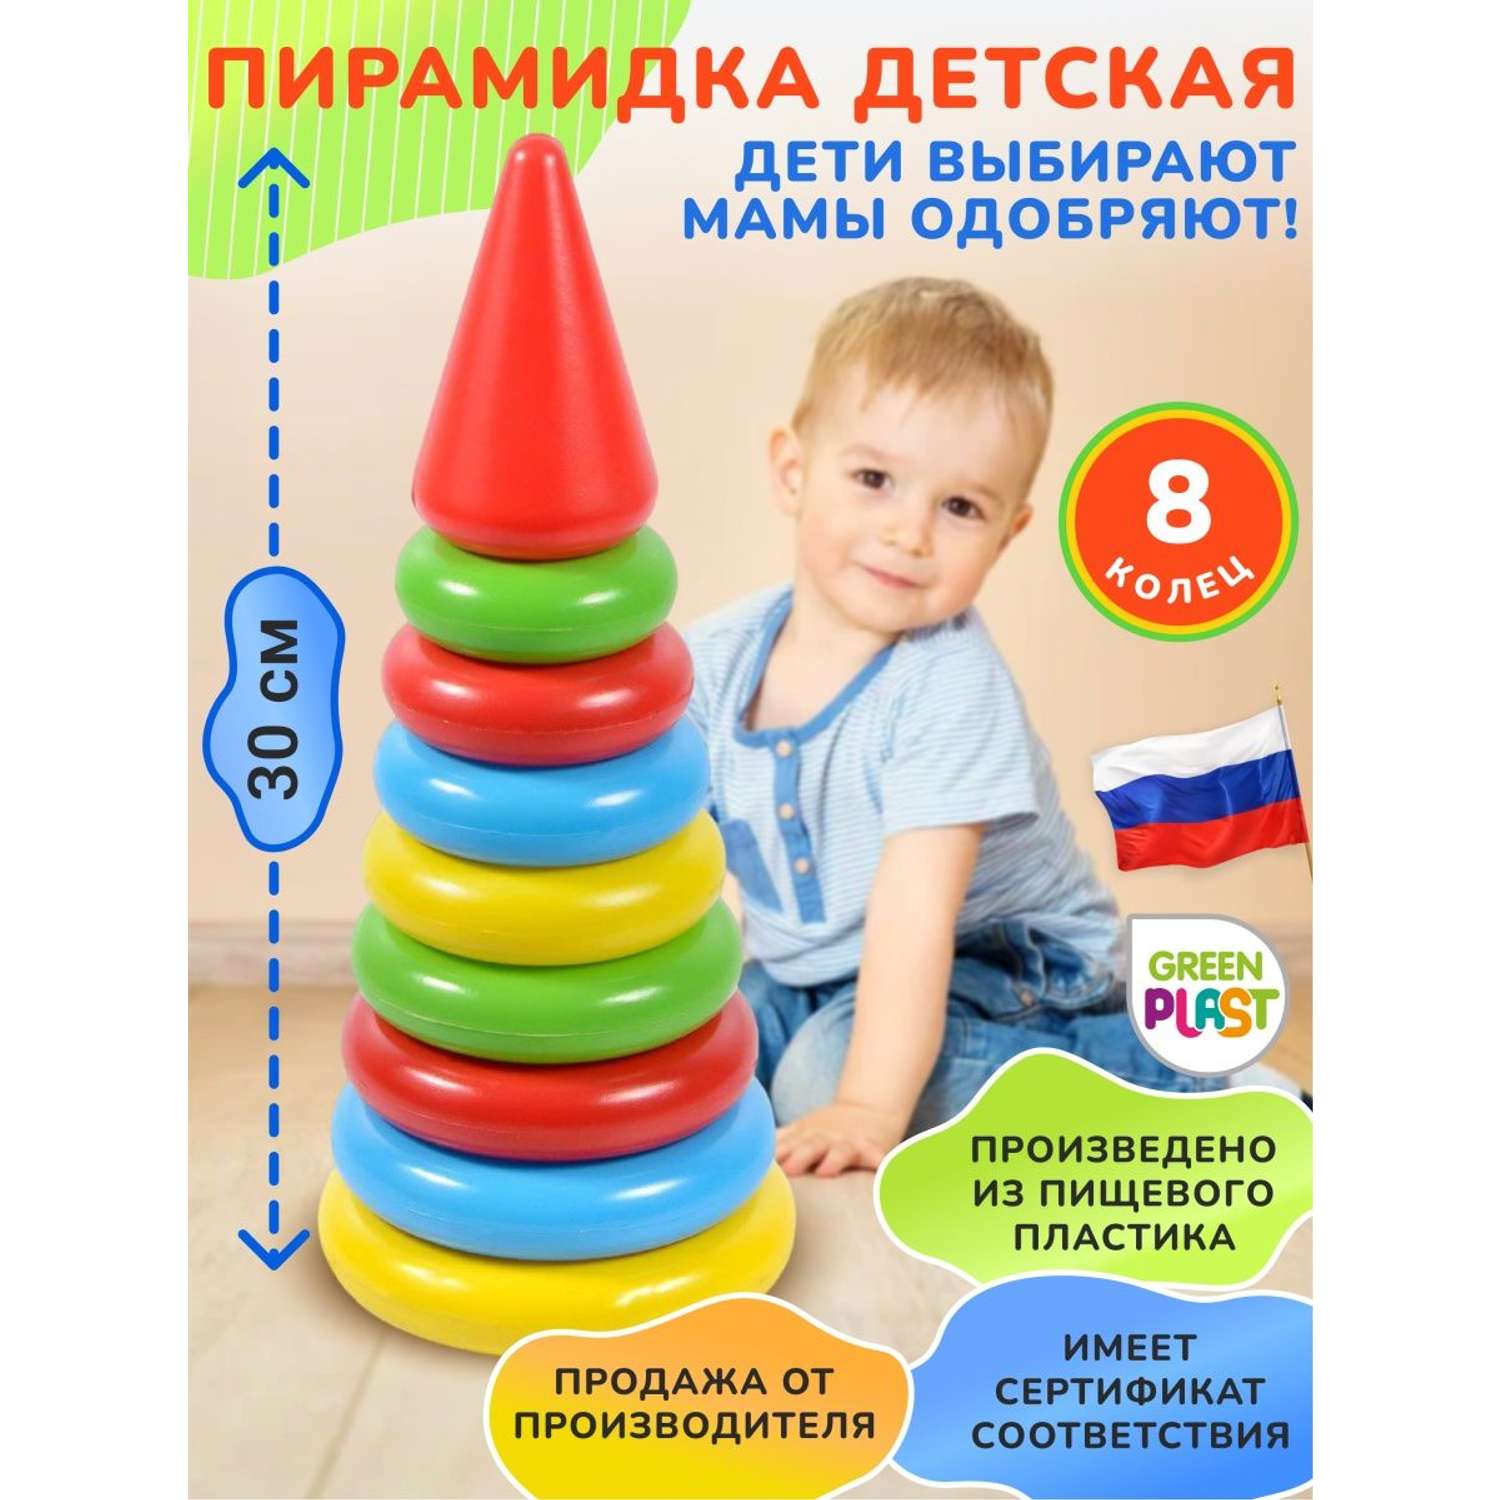 Пирамидка детская развивающая Green Plast 8 колец с наконечником обучающая игрушка - фото 1